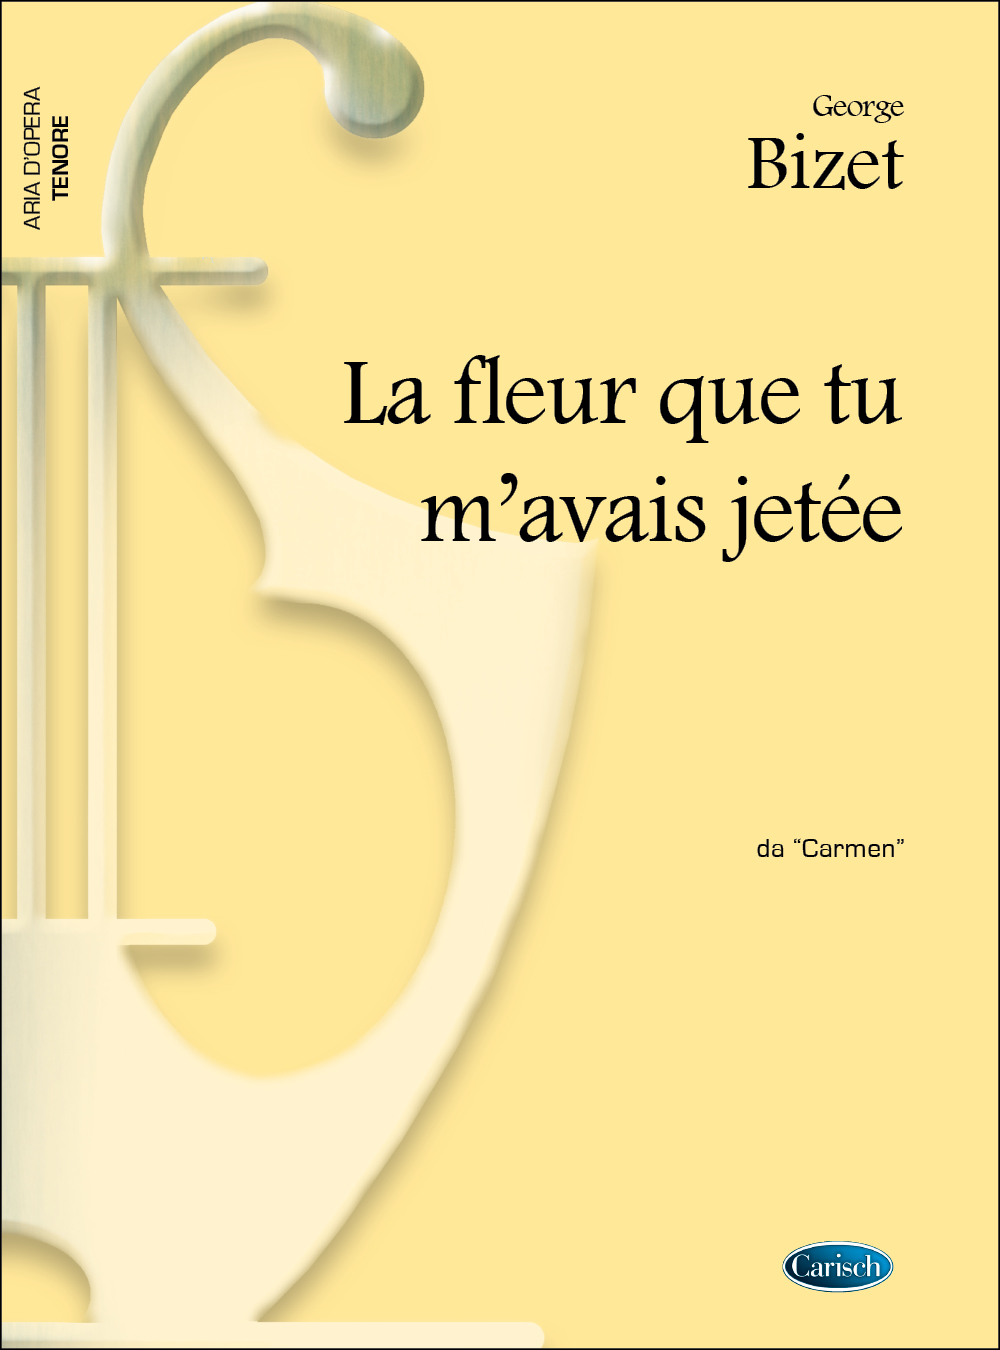 Bizet Fleur Que M'avais Jetee: Tenor